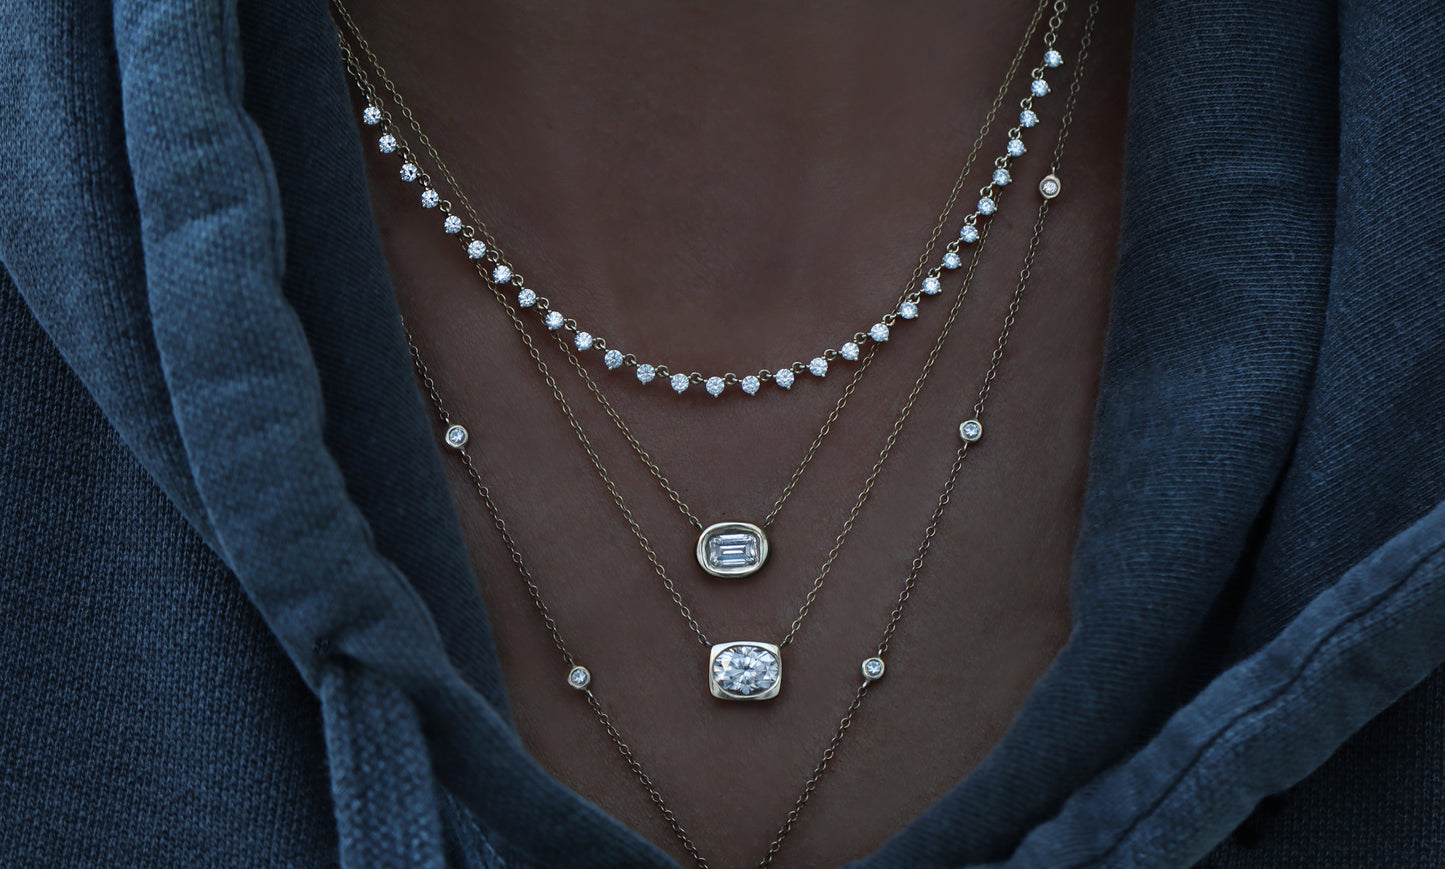 14kt gold and diamond oval bezel necklace